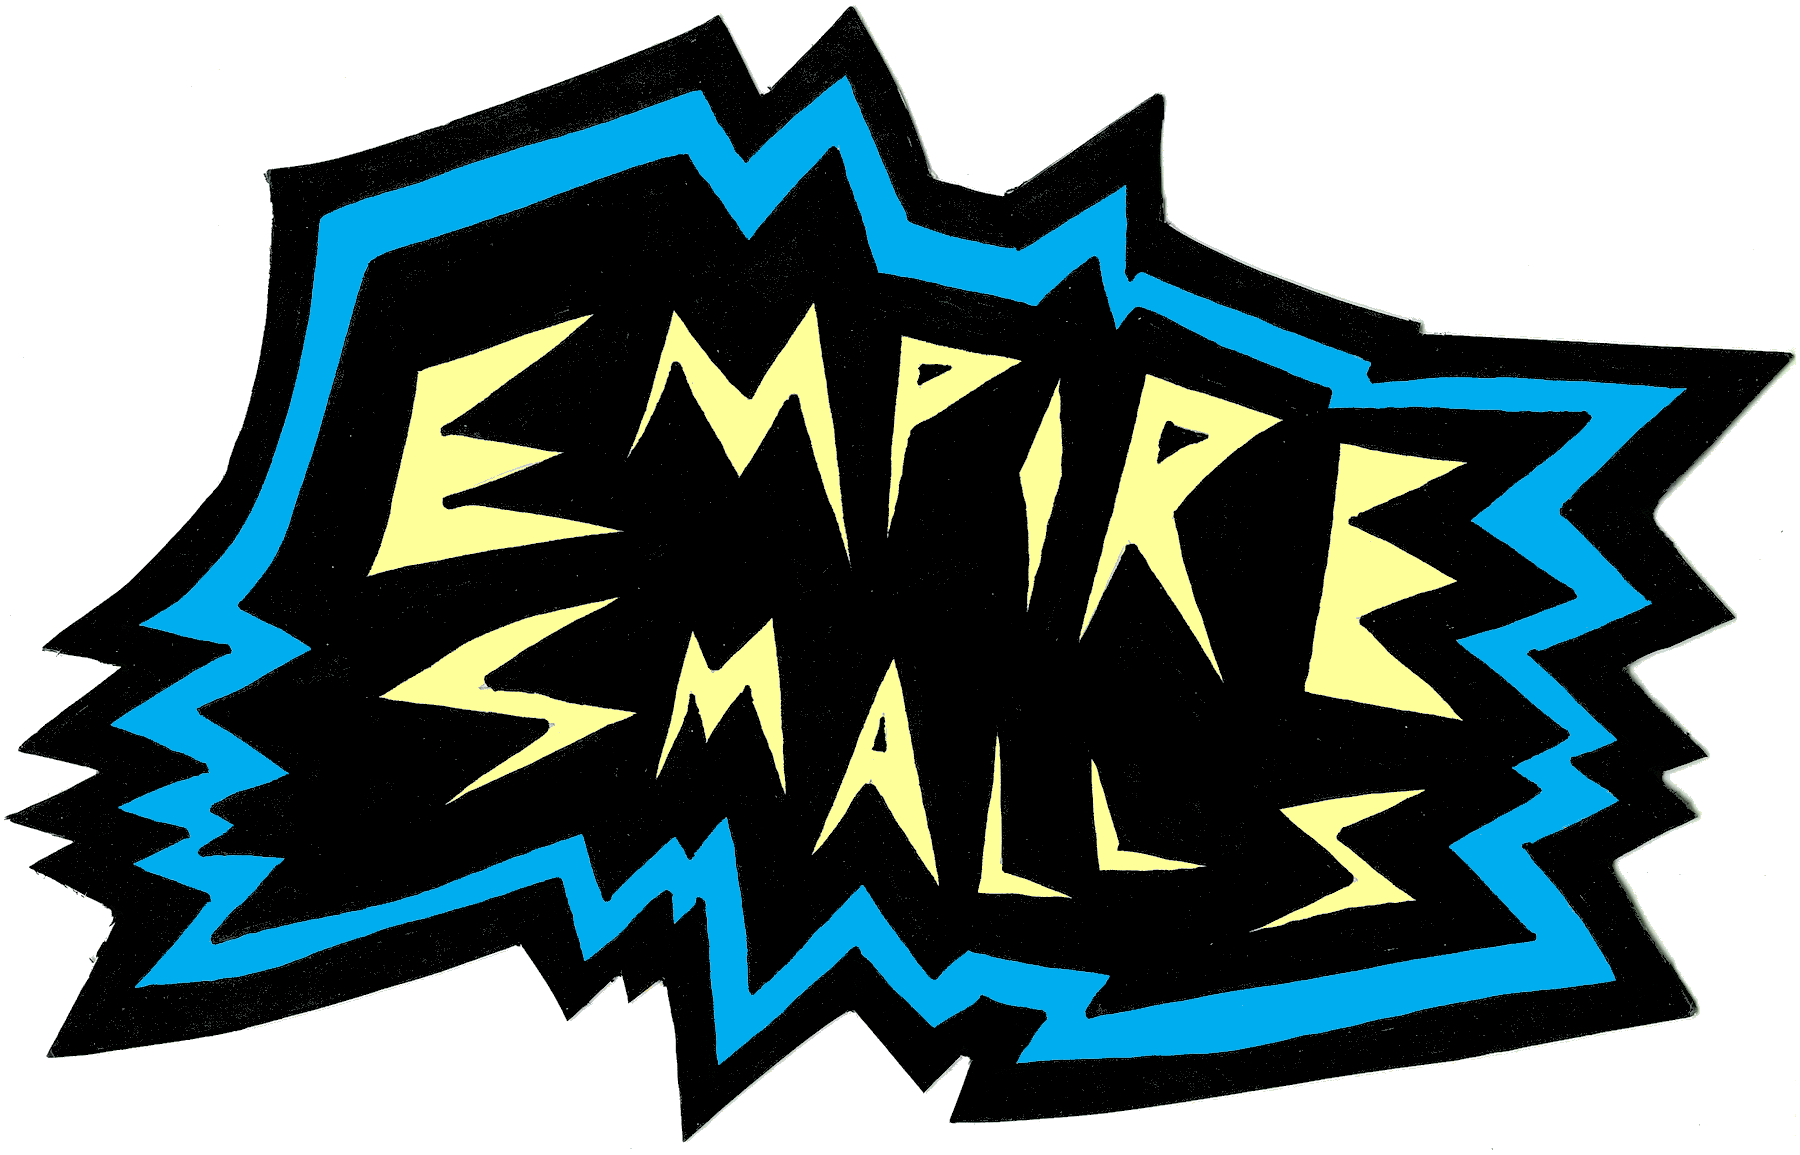 Empire Smalls logo